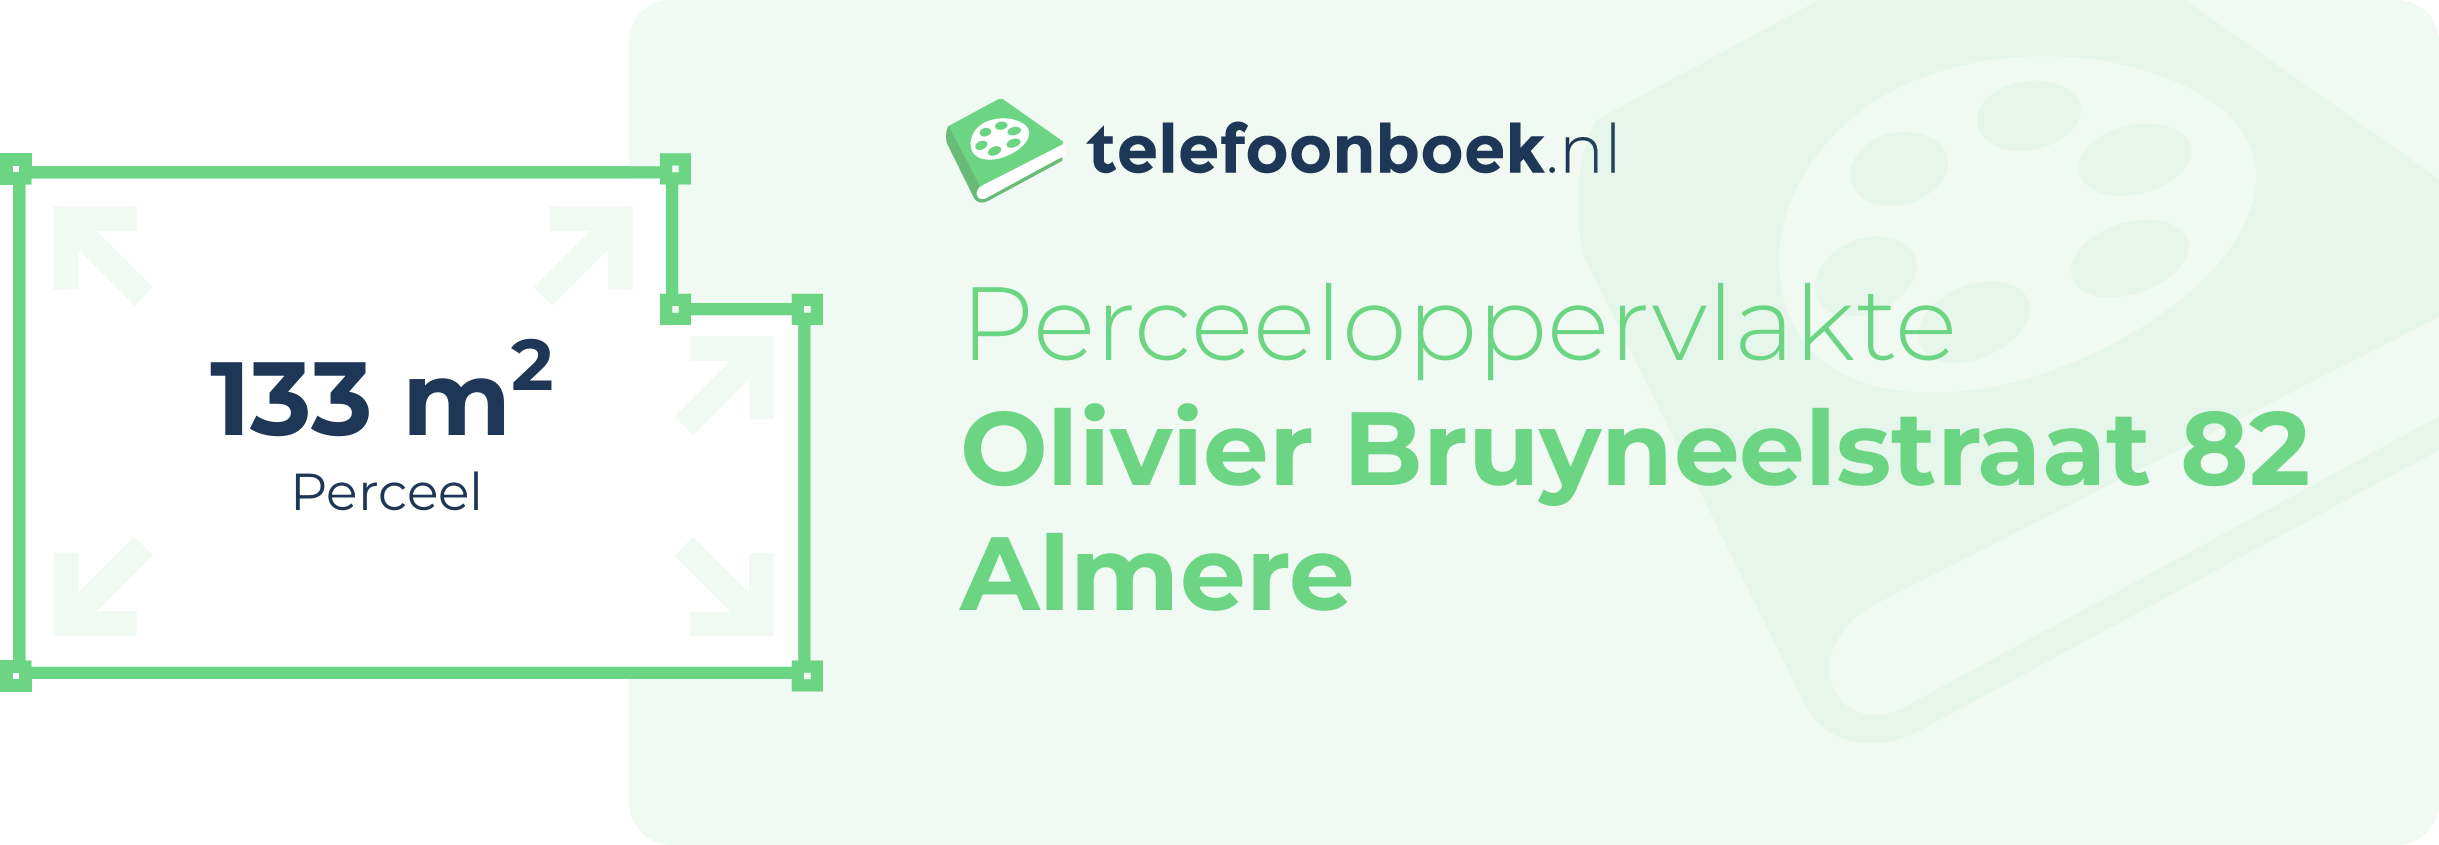 Perceeloppervlakte Olivier Bruyneelstraat 82 Almere